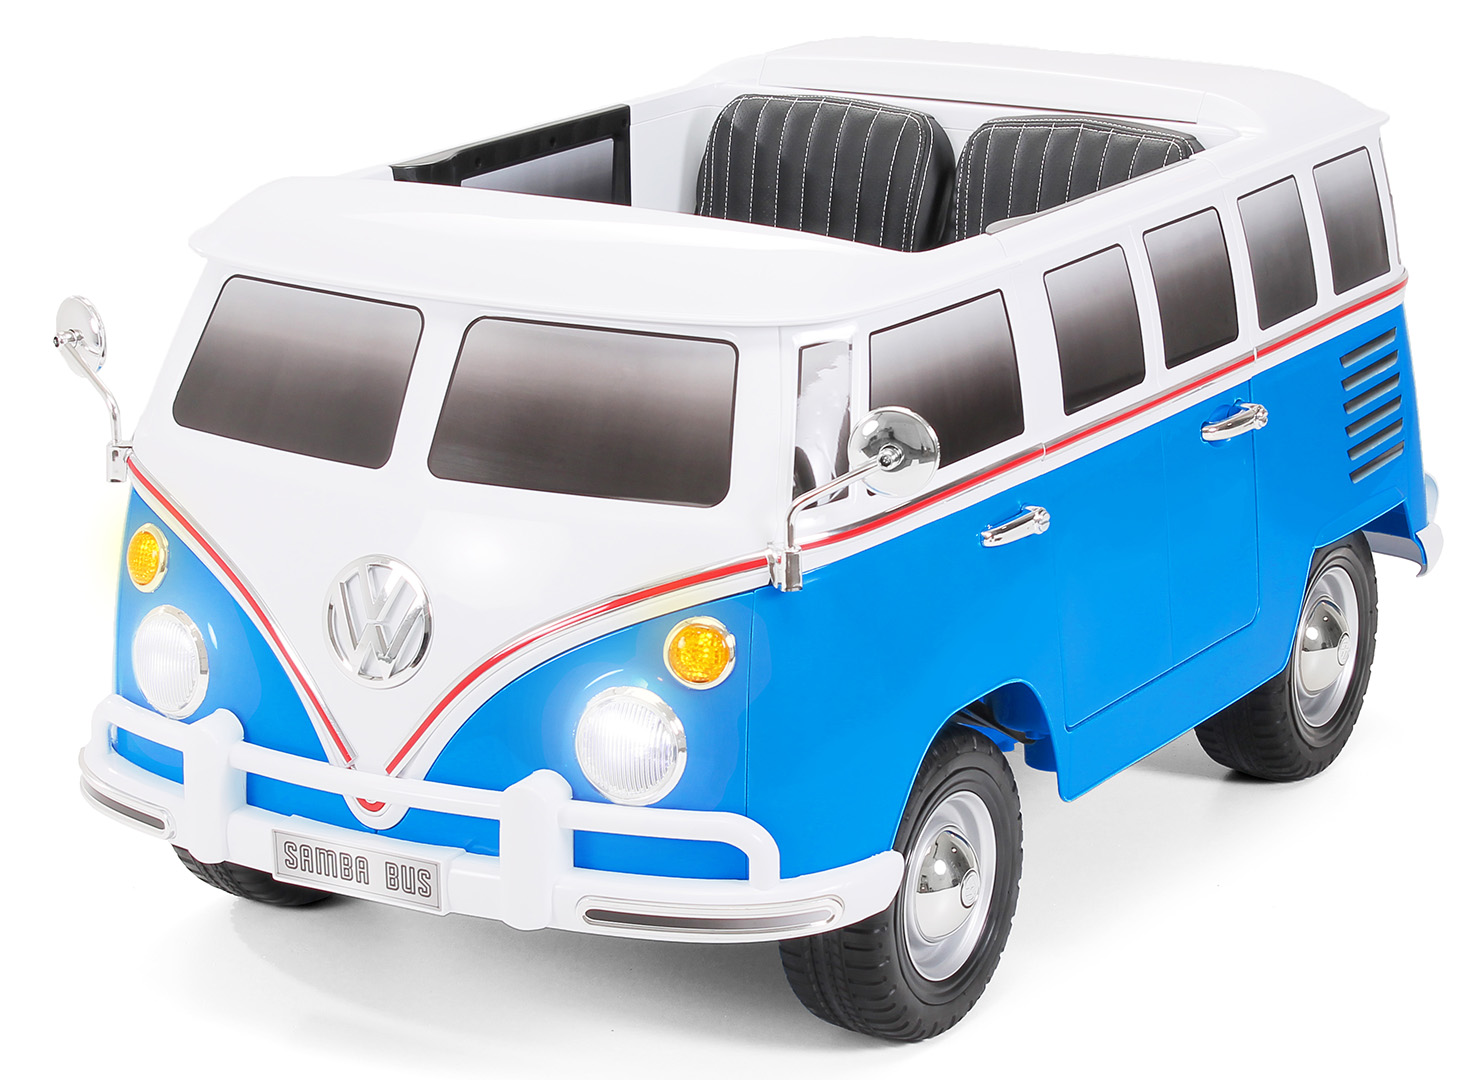 Kinderauto Rollplay VW Bus 12V 7A-2x35Wat Leder RC LED FM-Radio MP3 Aux ROT/BLAU 